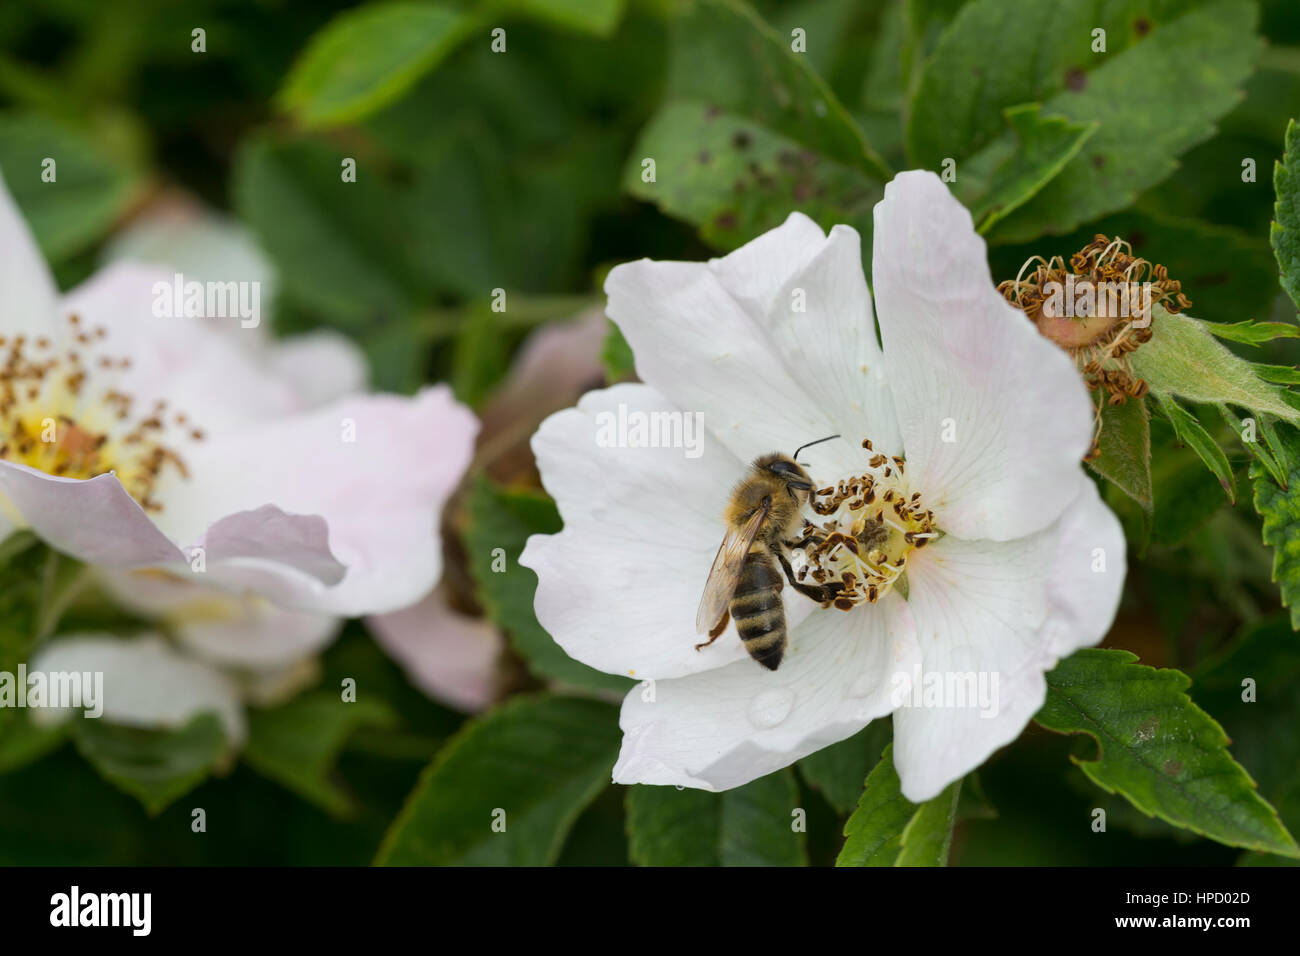 Honigbiene, Honig-Biene, Biene, Bienen, Apis mellifera, Apis mellifica, Blütenbesuch auf Wildrose, Rose, Heckenrose, Nektarsuche, Blütenbestäubung, ho Stock Photo